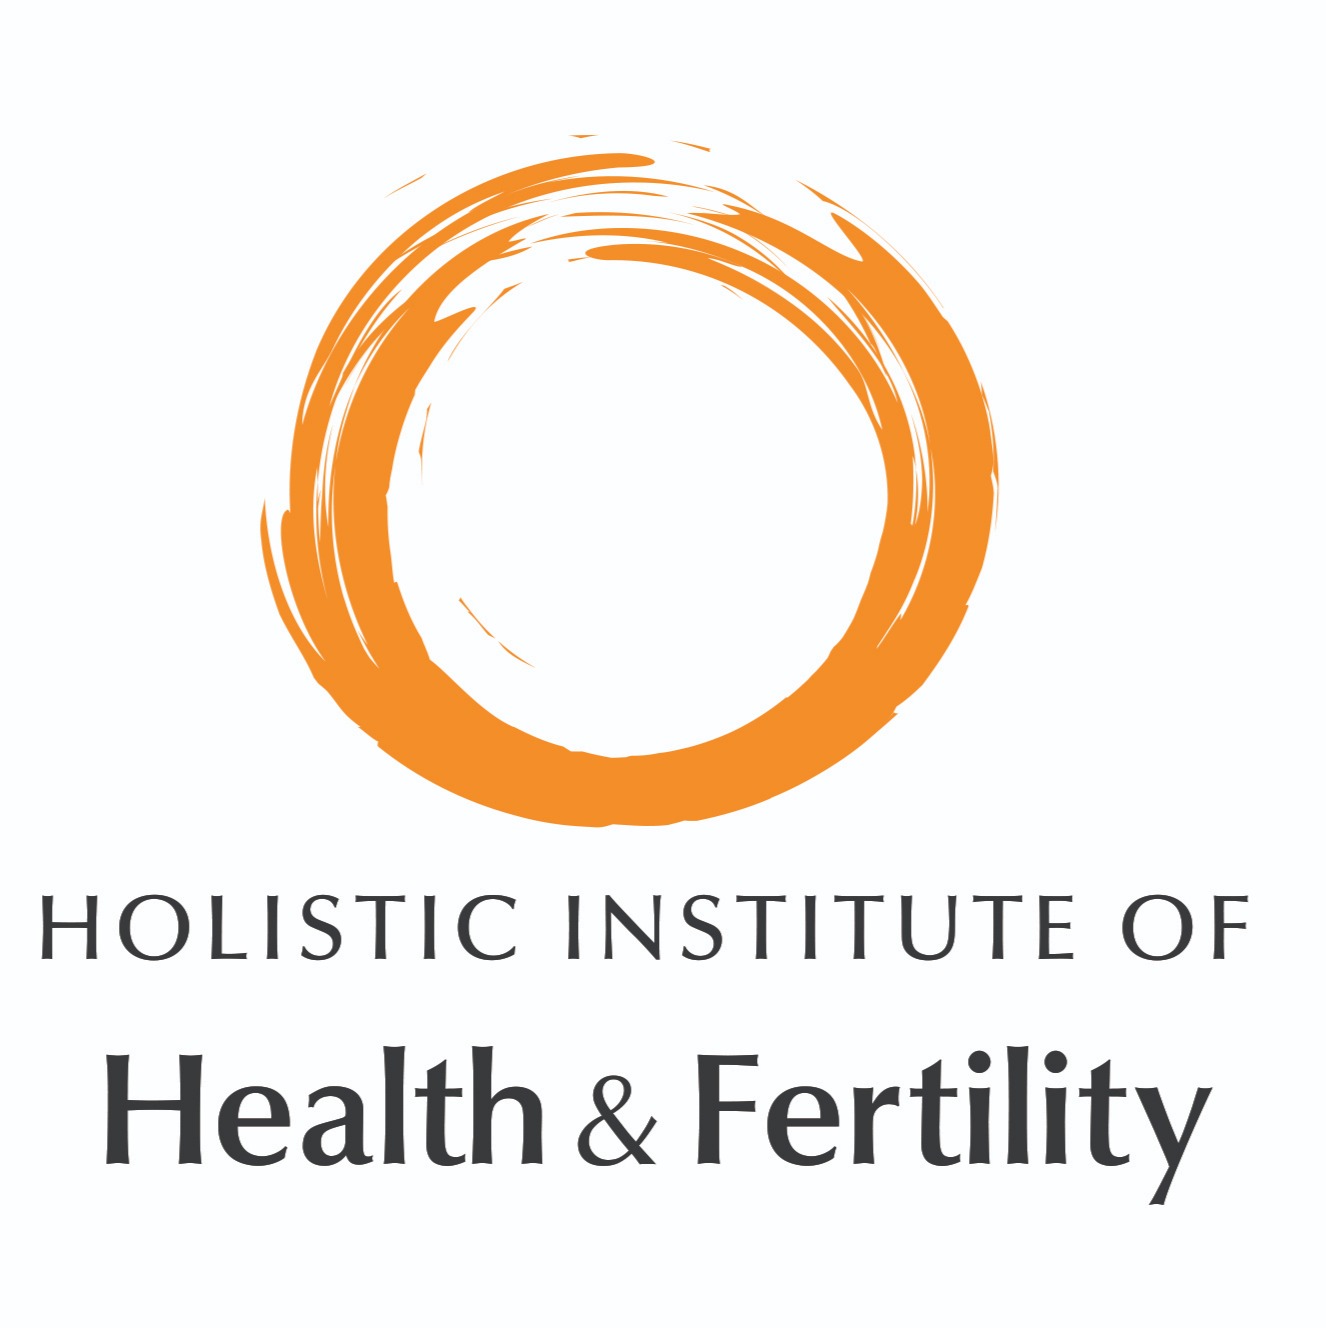 Holistic Institute of Health & Fertility